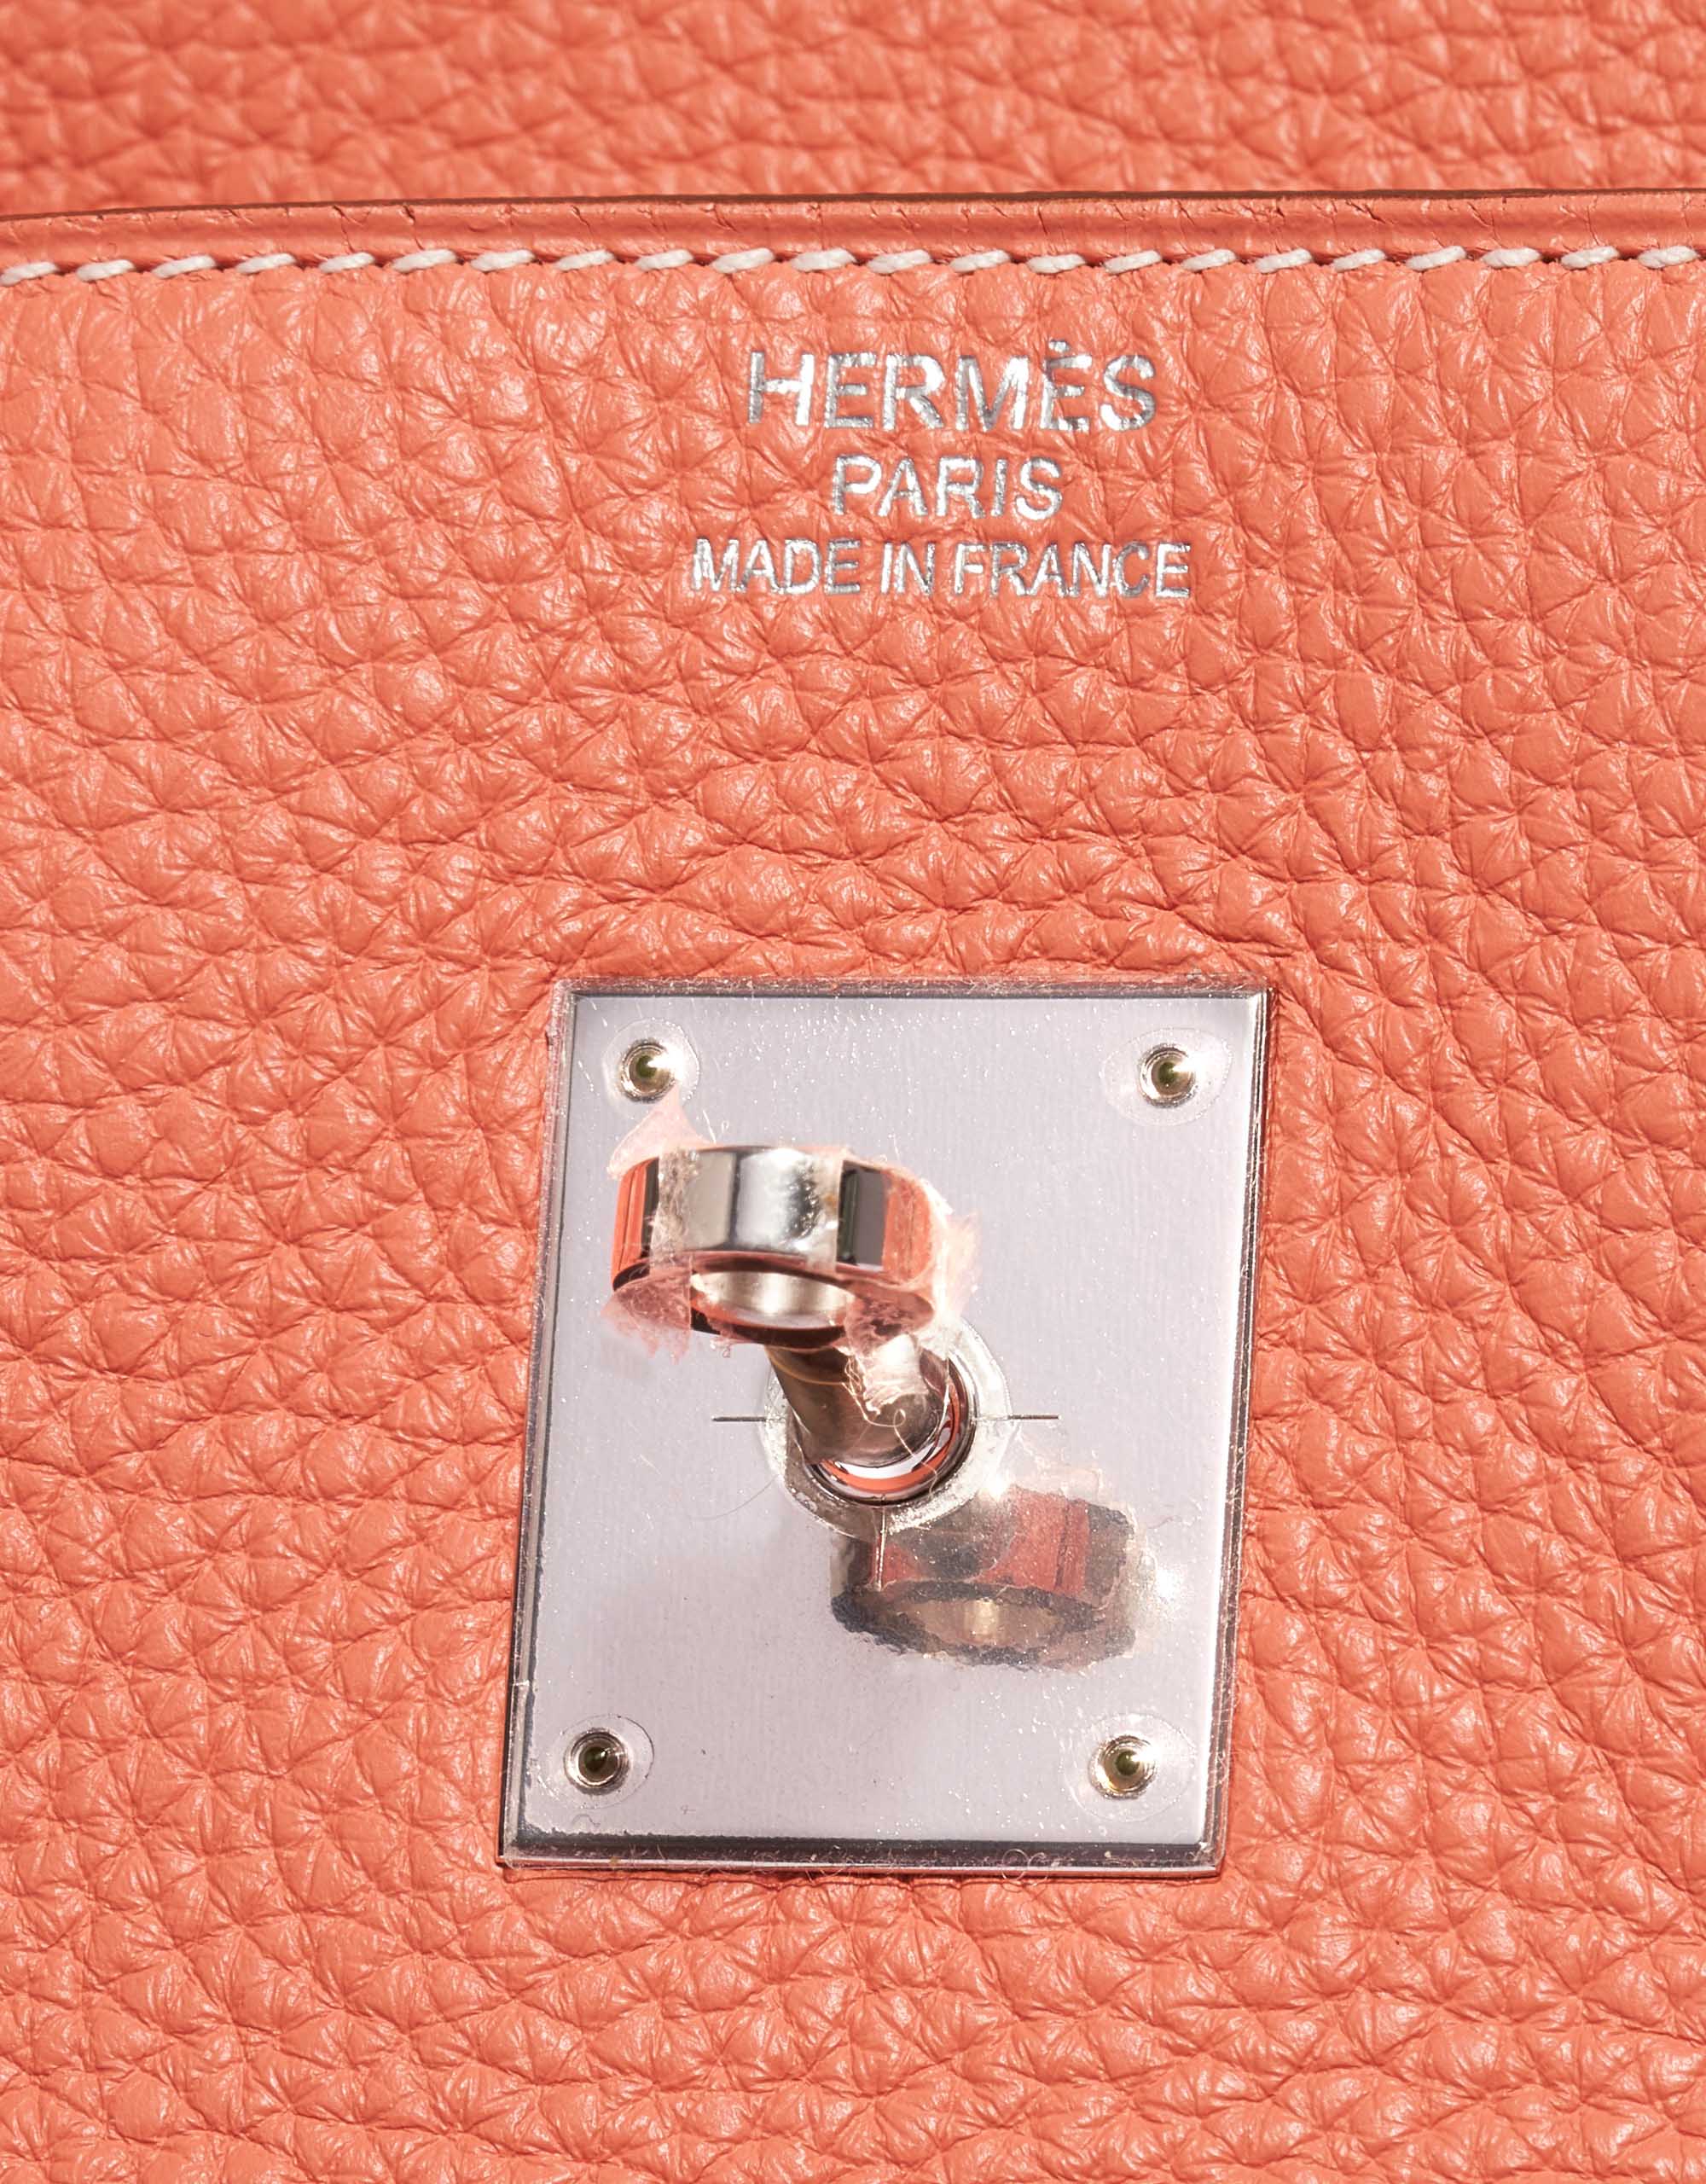 Hermes 22cm Bi-Color Gris Perle/Crevette Clemence Leather